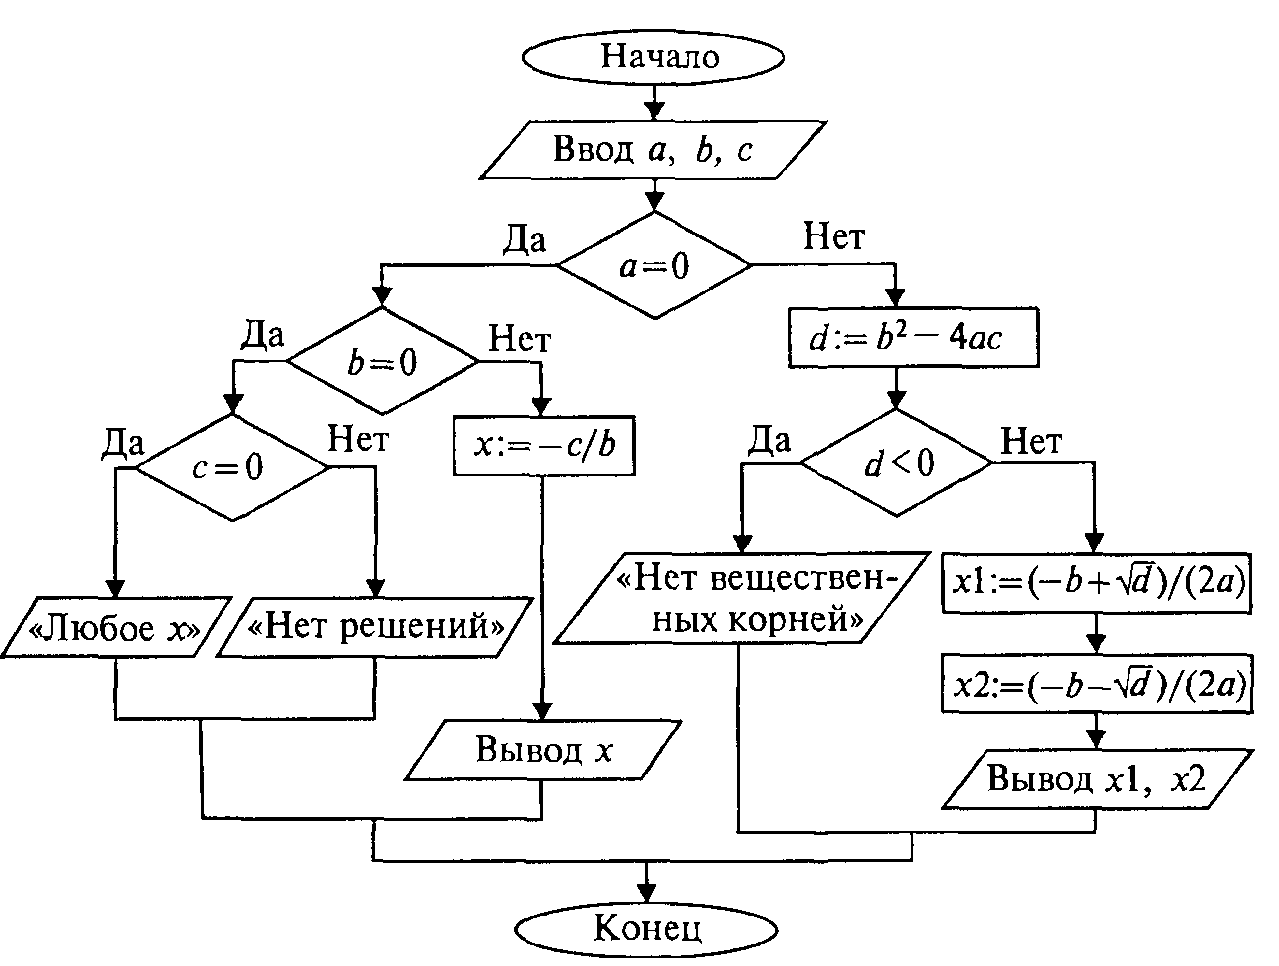 Блок схема алгоритма решения задания